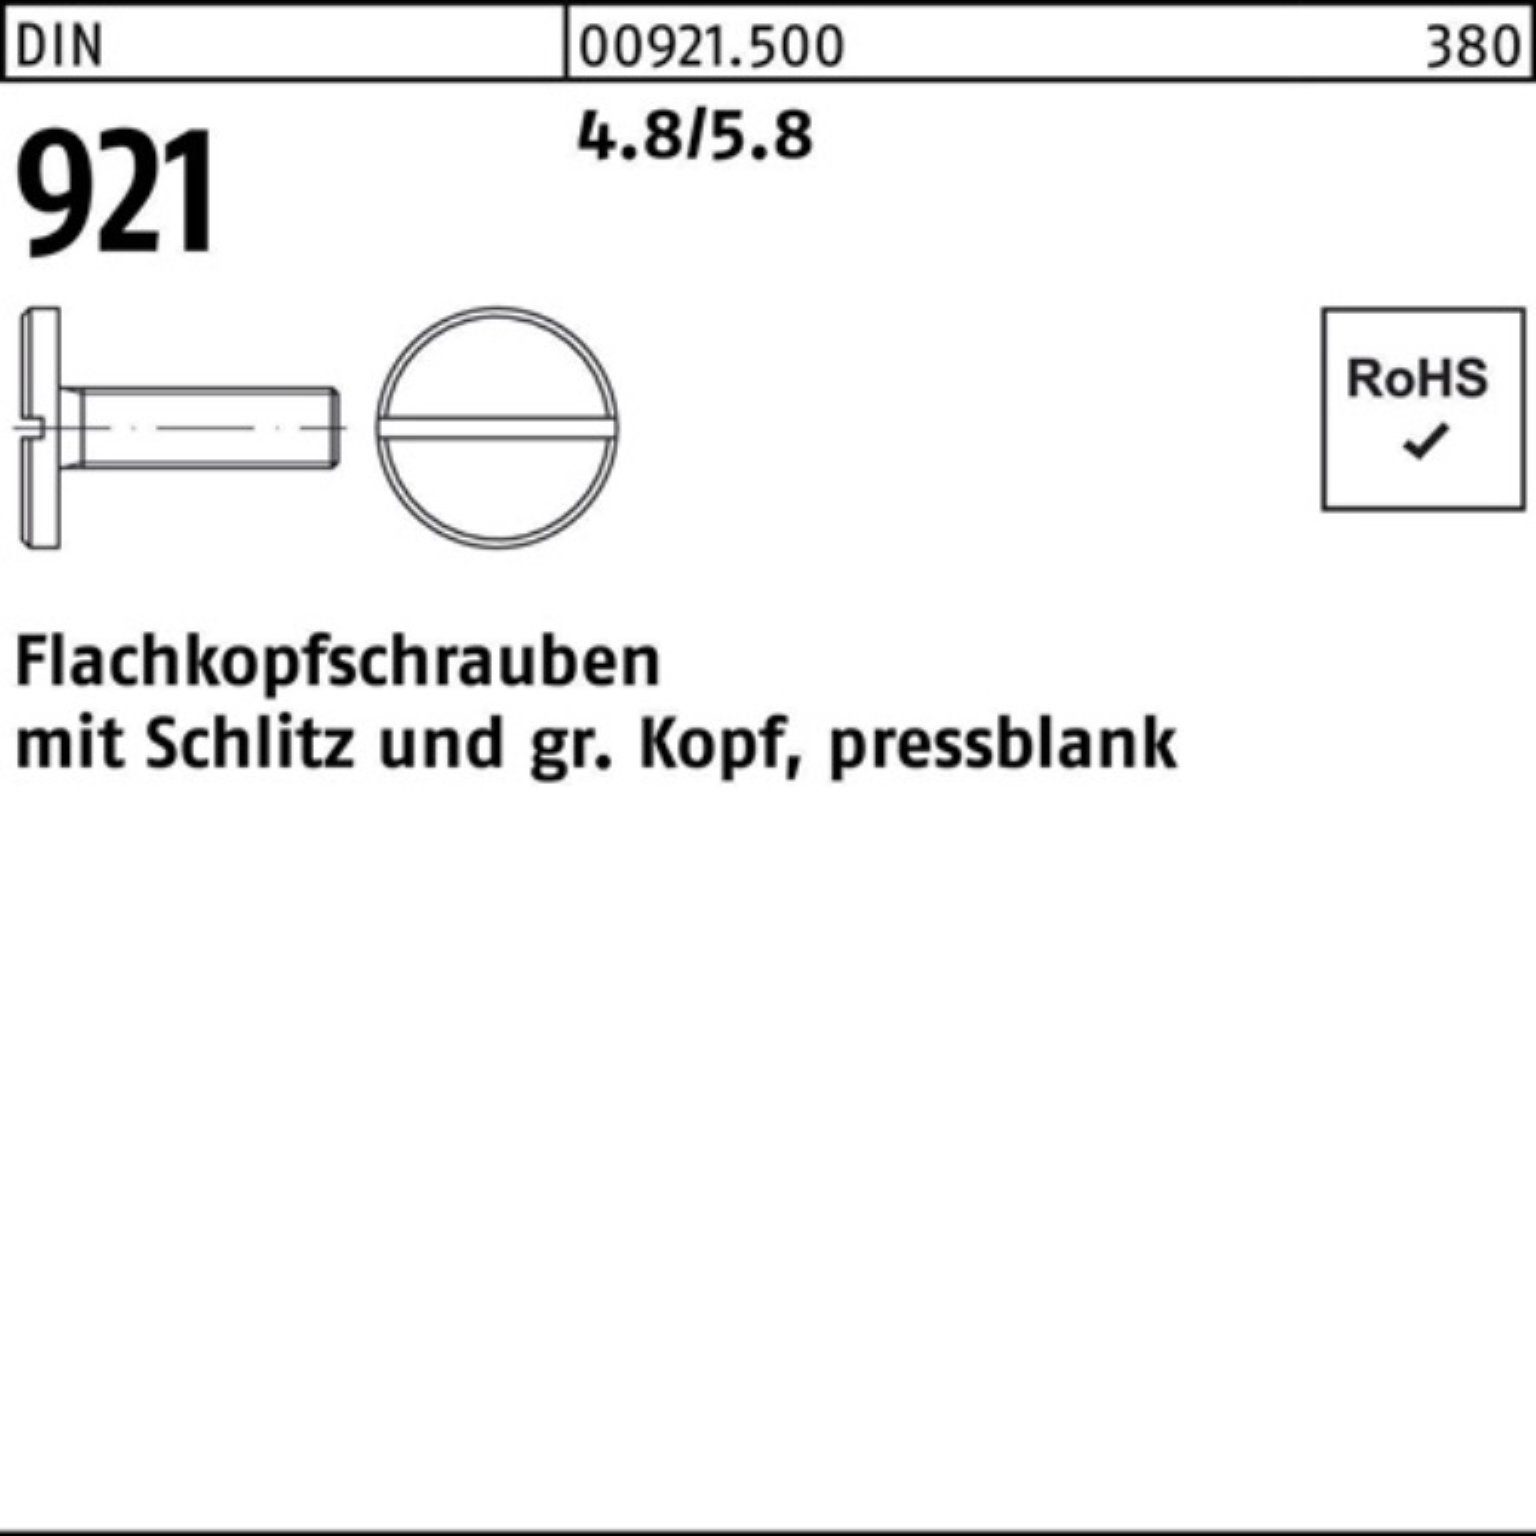 Reyher Flachkopfschraube 921 4.8/5.8 Stück M8x Schraube 100 Pack 10 DIN 100er Schlitz